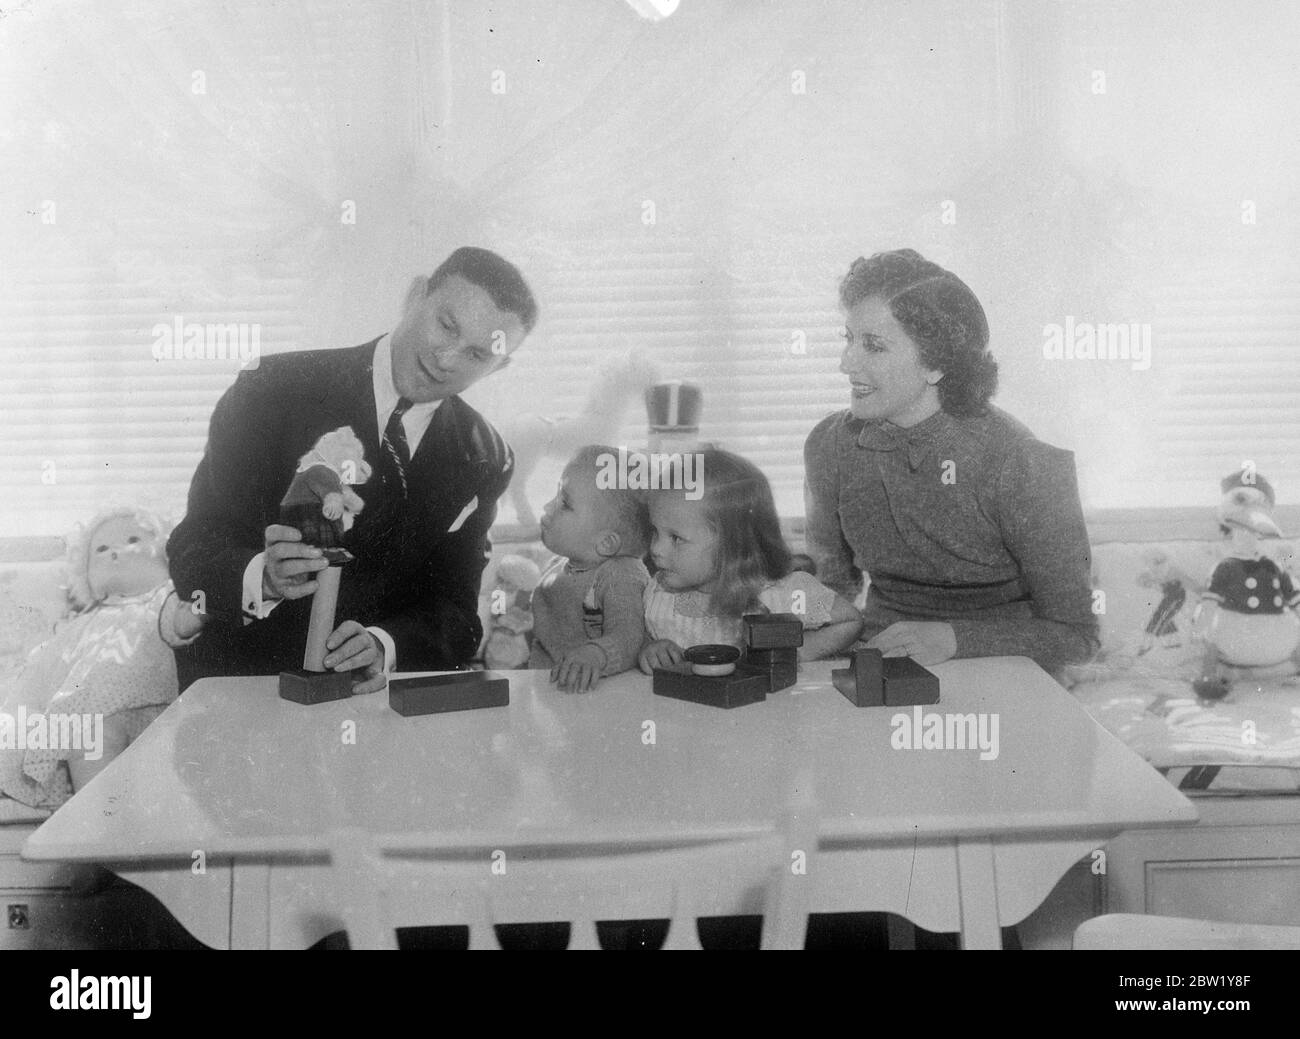 Screen Exzentrik und ihre Adoptivkinder. Fotoausstellungen: George Burns und Gracie Allen, das berühmte exzentrische Team der Filme, nehmen sich einen Urlaub von ihrer üblichen Aufgabe, Tausende zu unterhalten, um die beiden Kinder, die sie adoptiert haben - Sandra und Ronnie - in ihrem Hollywood-Haus zu unterhalten. Juni 1937 Stockfoto